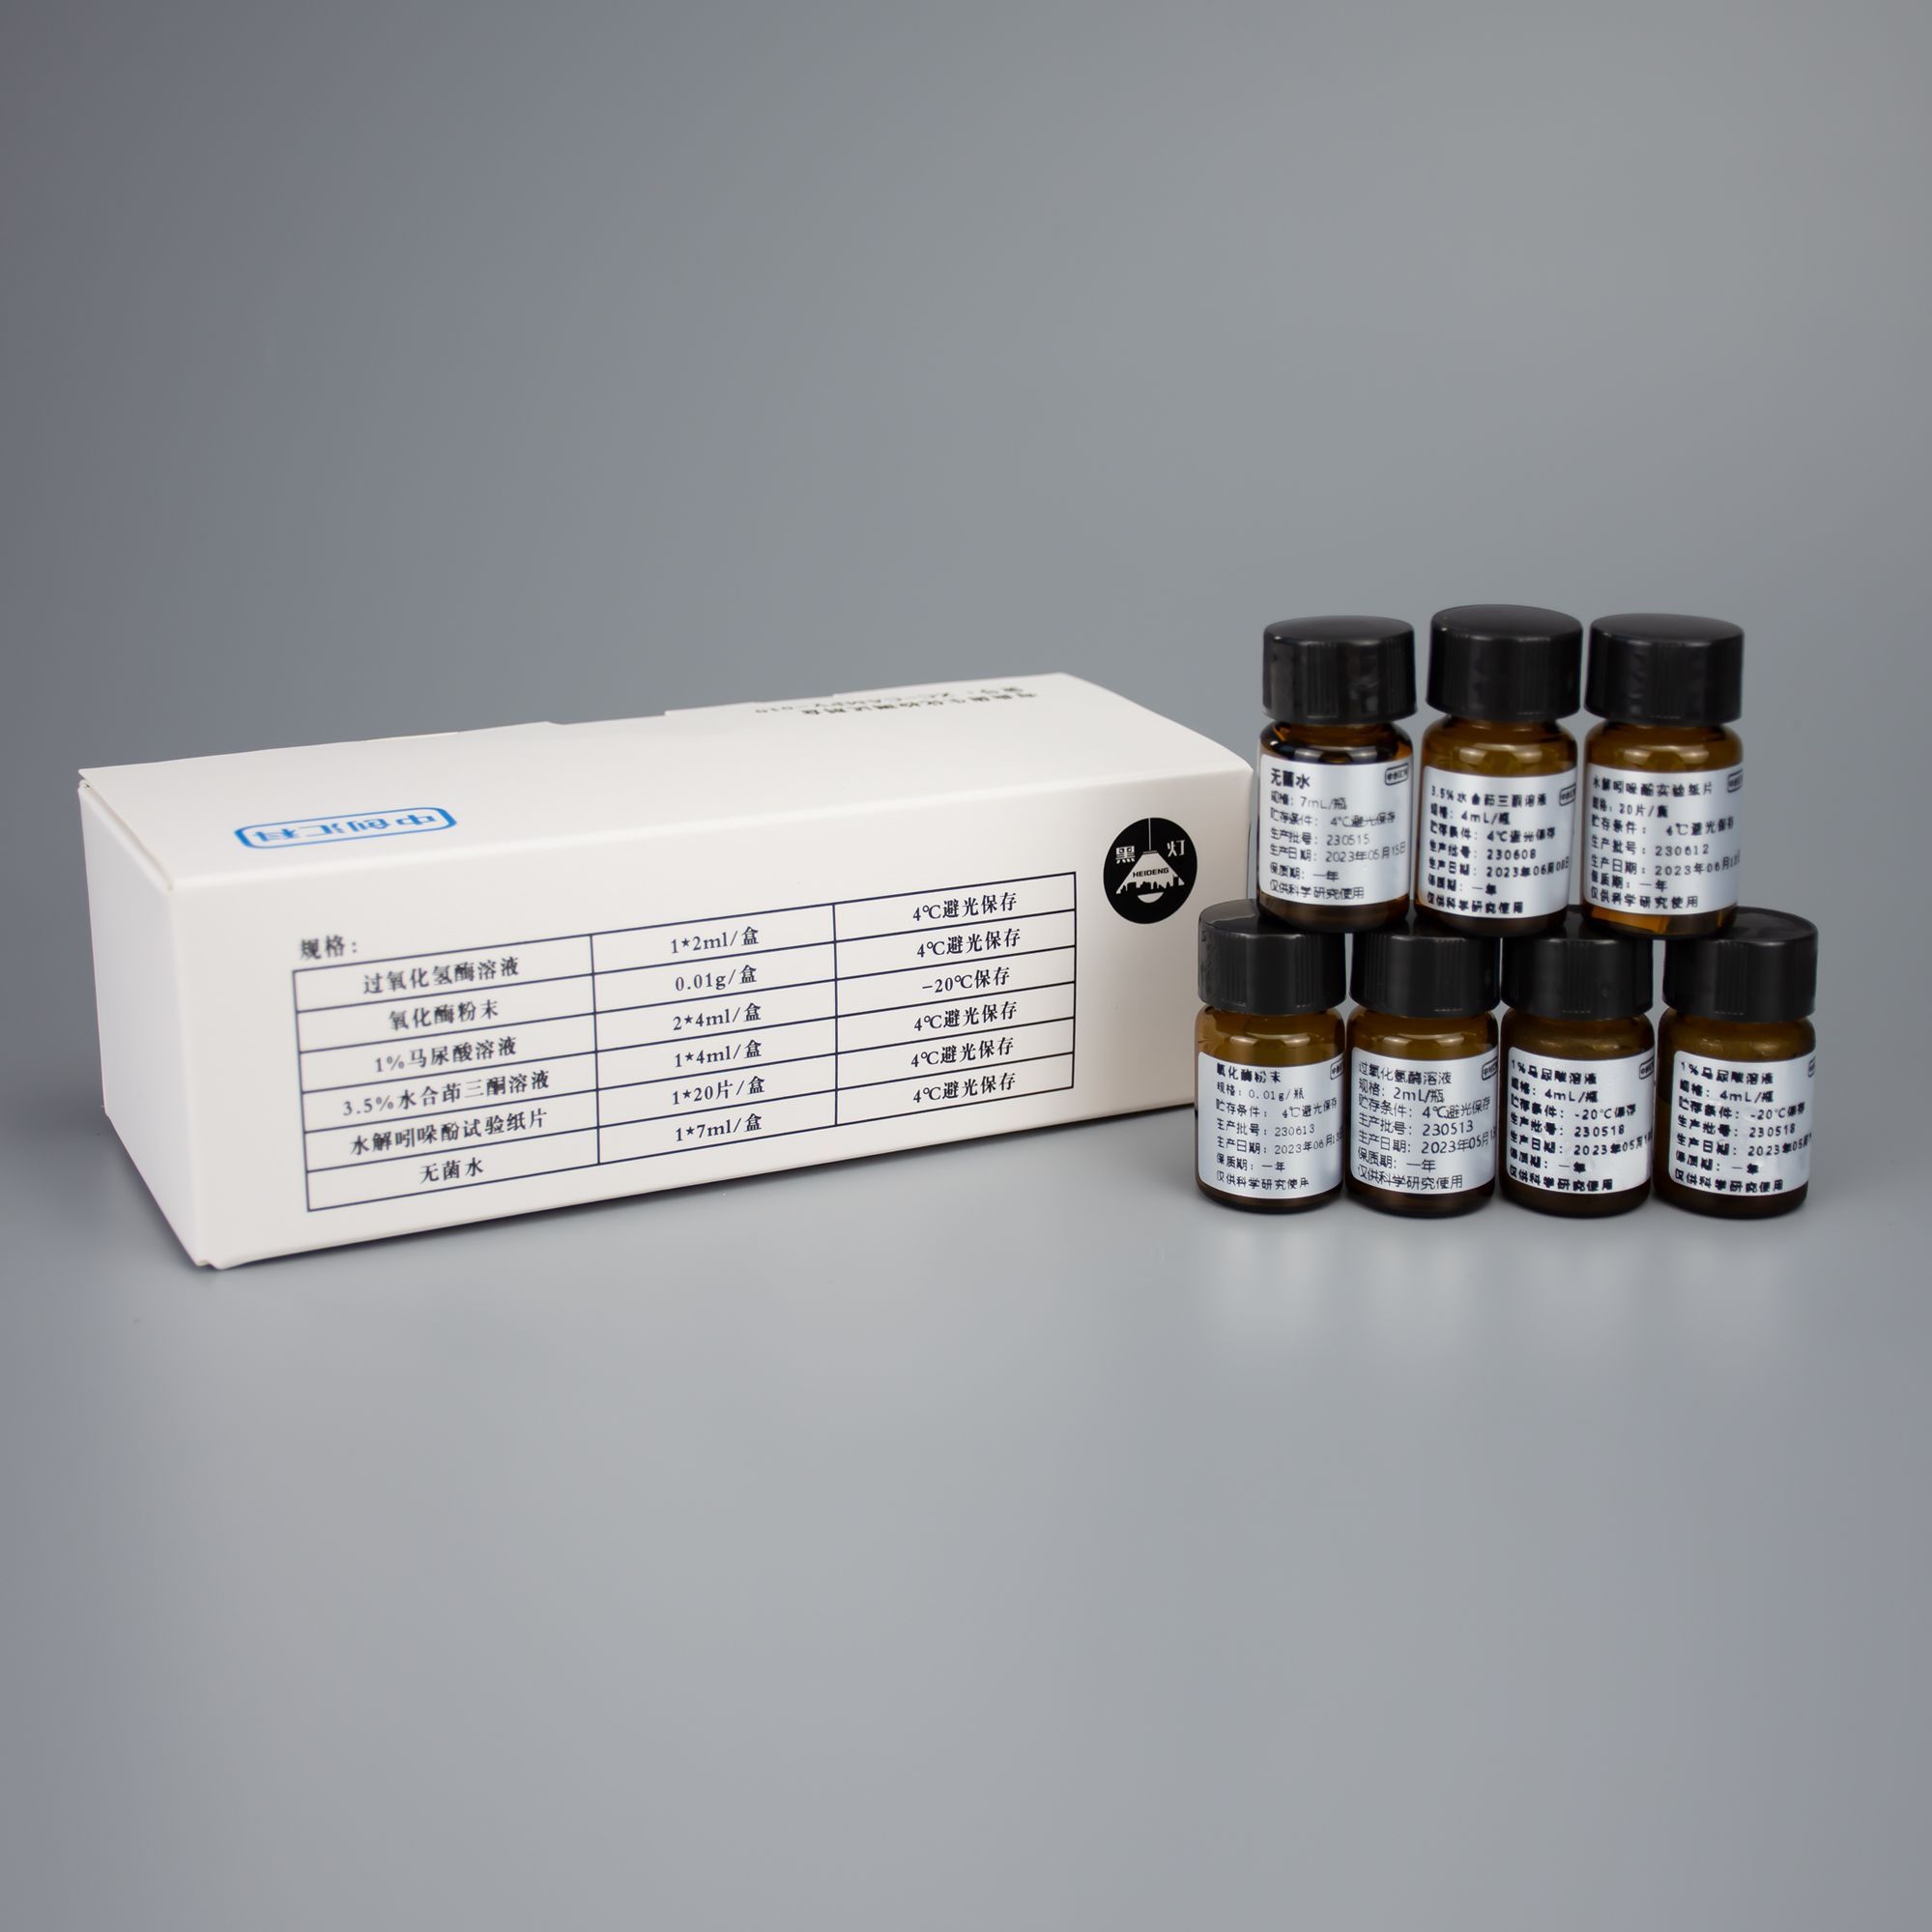 弯曲菌生化检测试剂盒